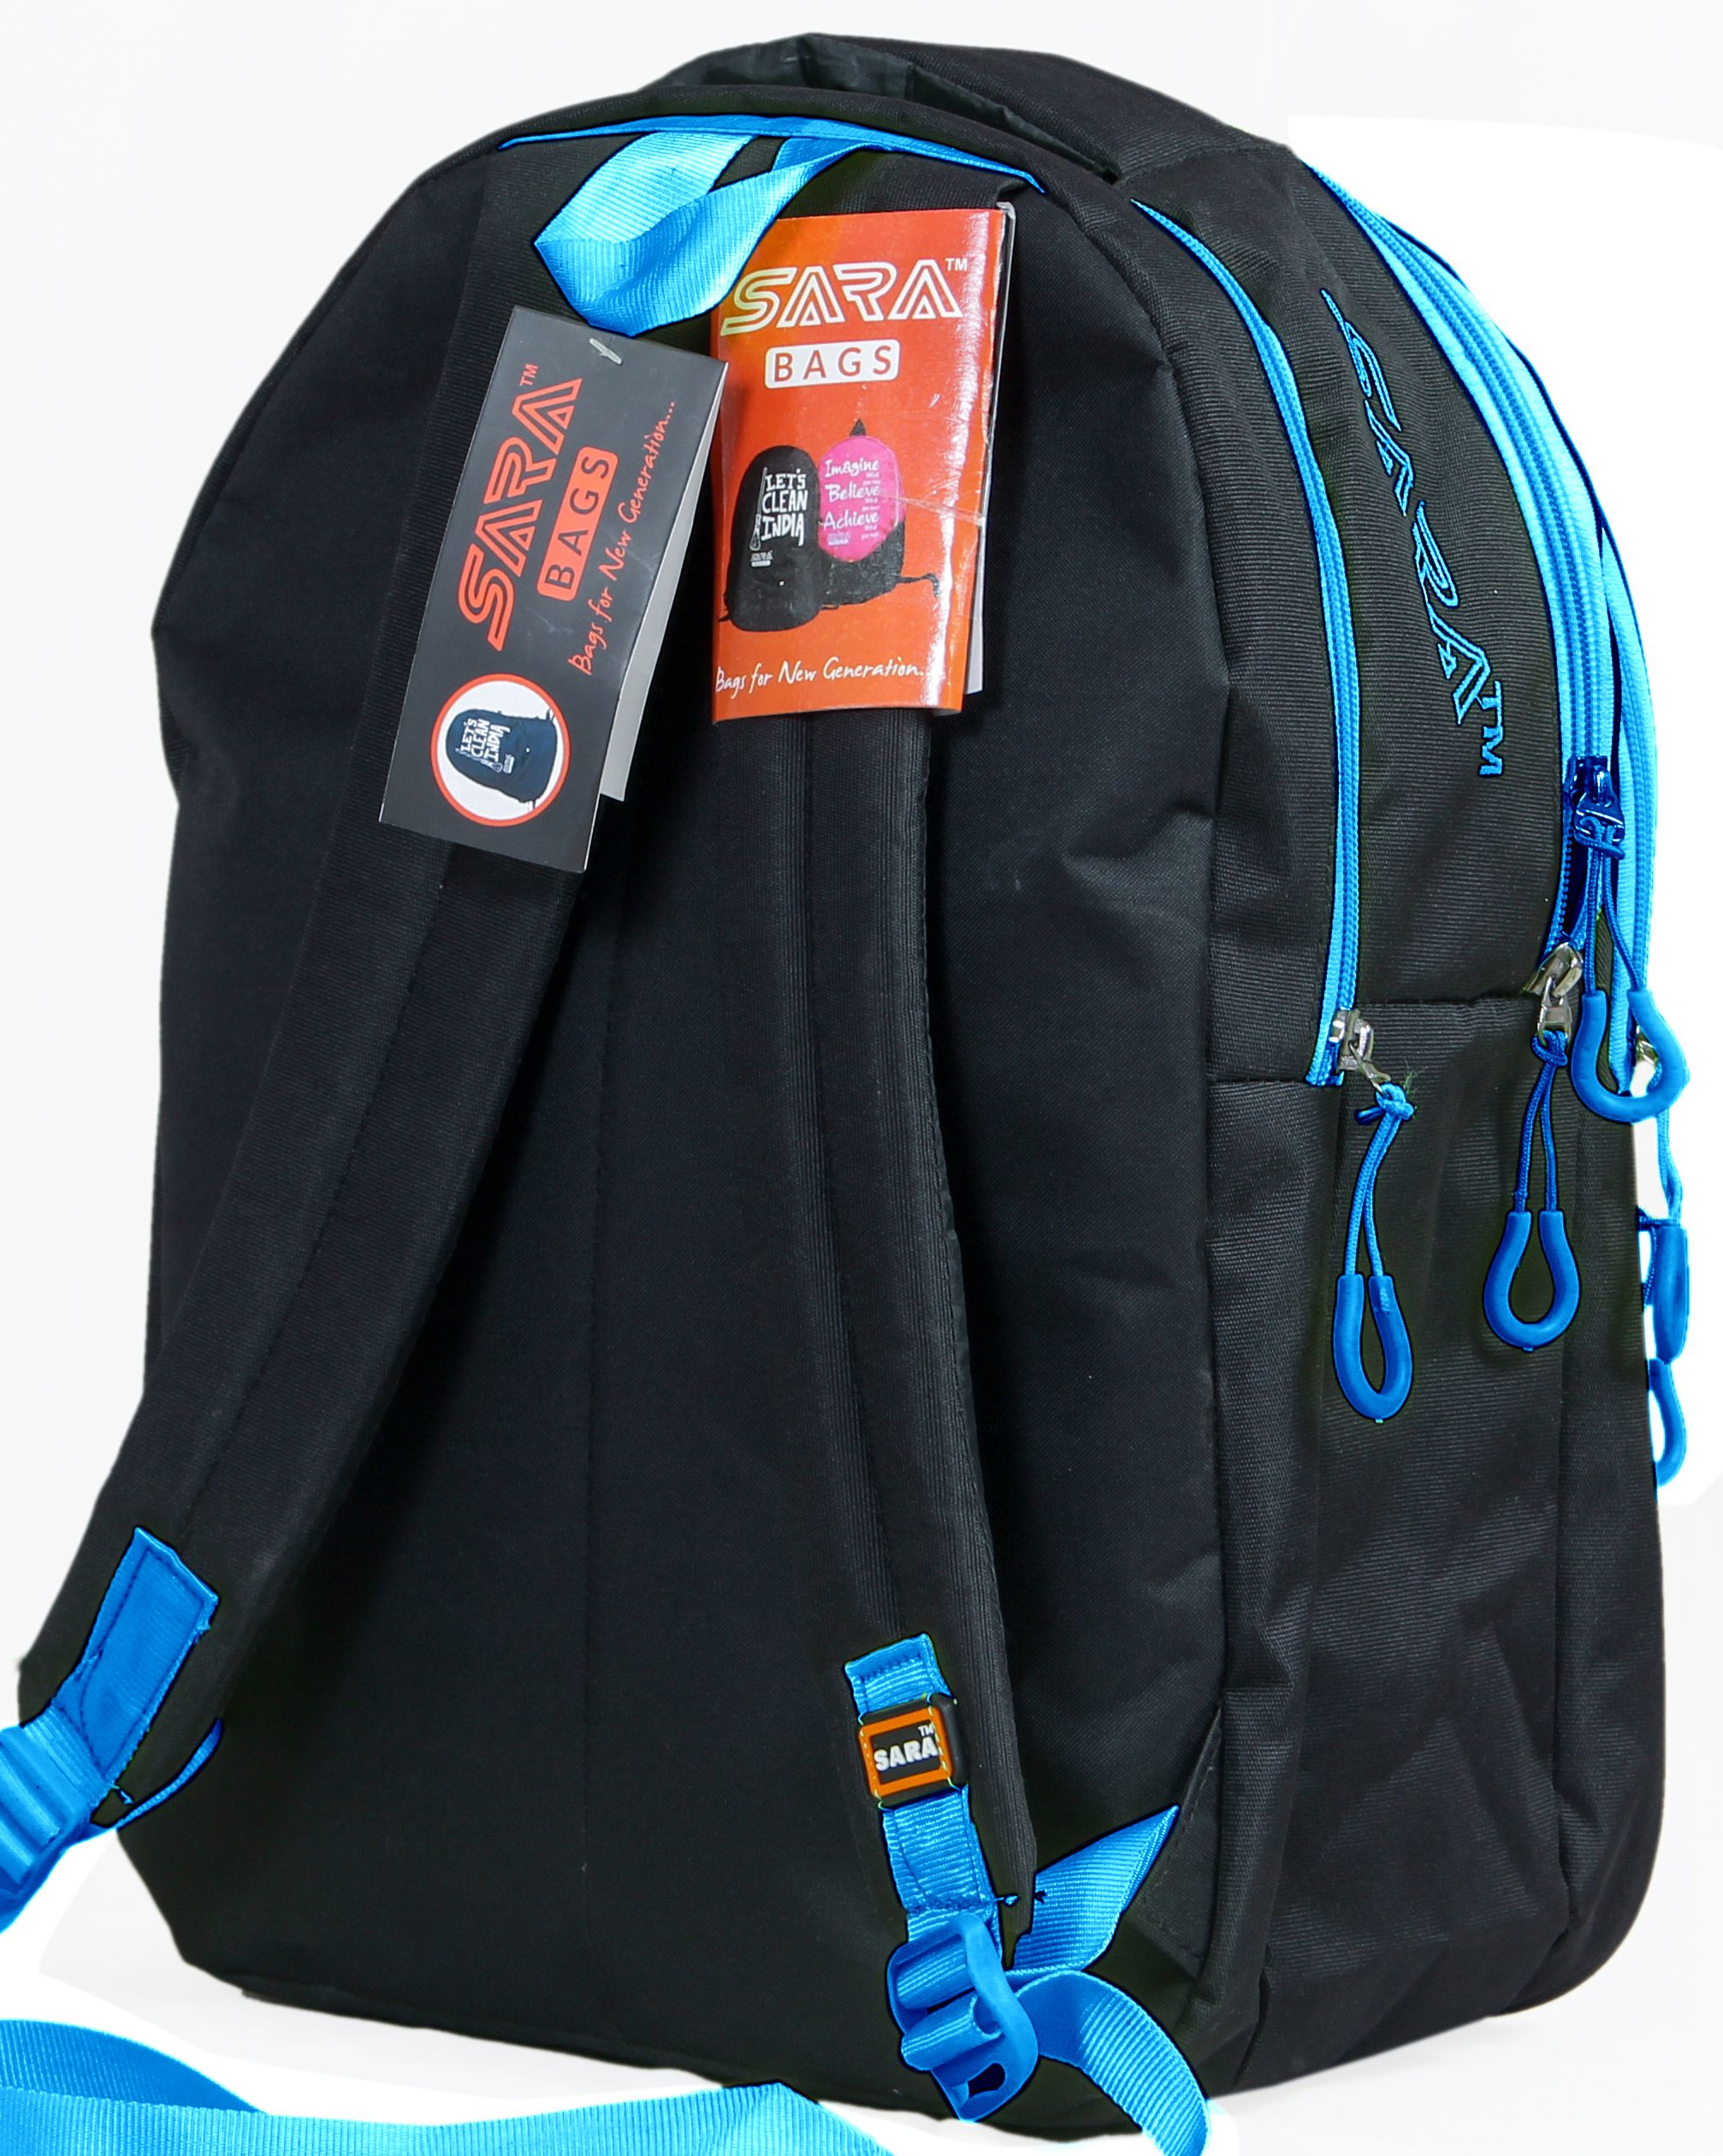 Sara Black School Bag College Backpack - Buy Sara Black School Bag College Backpack Online at ...